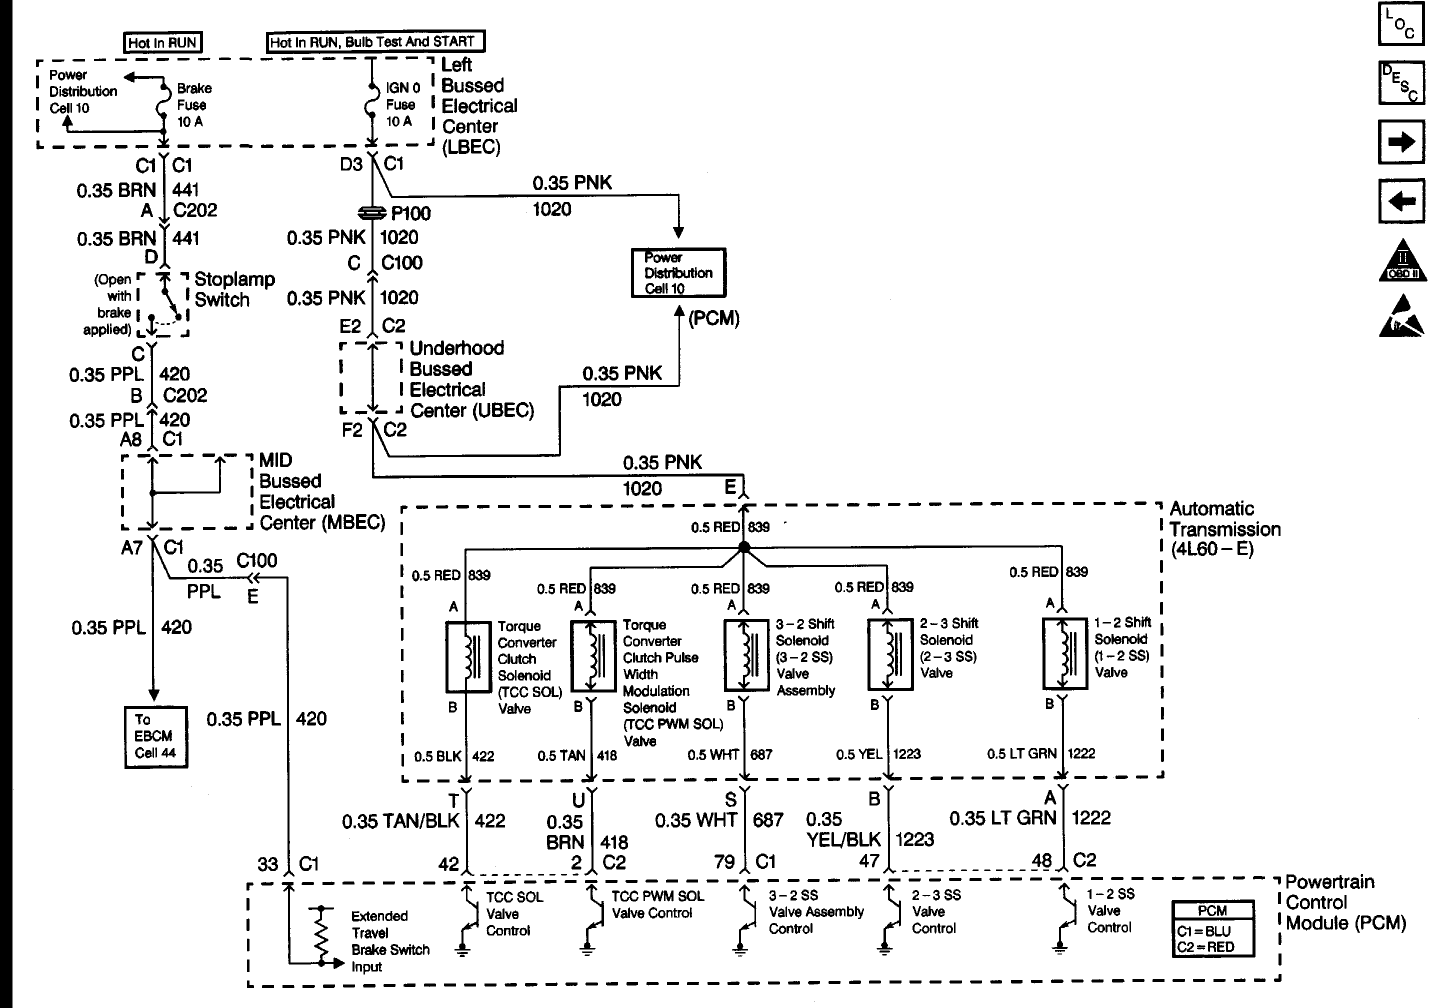 Wiring Schematic For 1999 Gmc Sierra, 2006 Gmc Sierra 2500hd Wiring Diagram